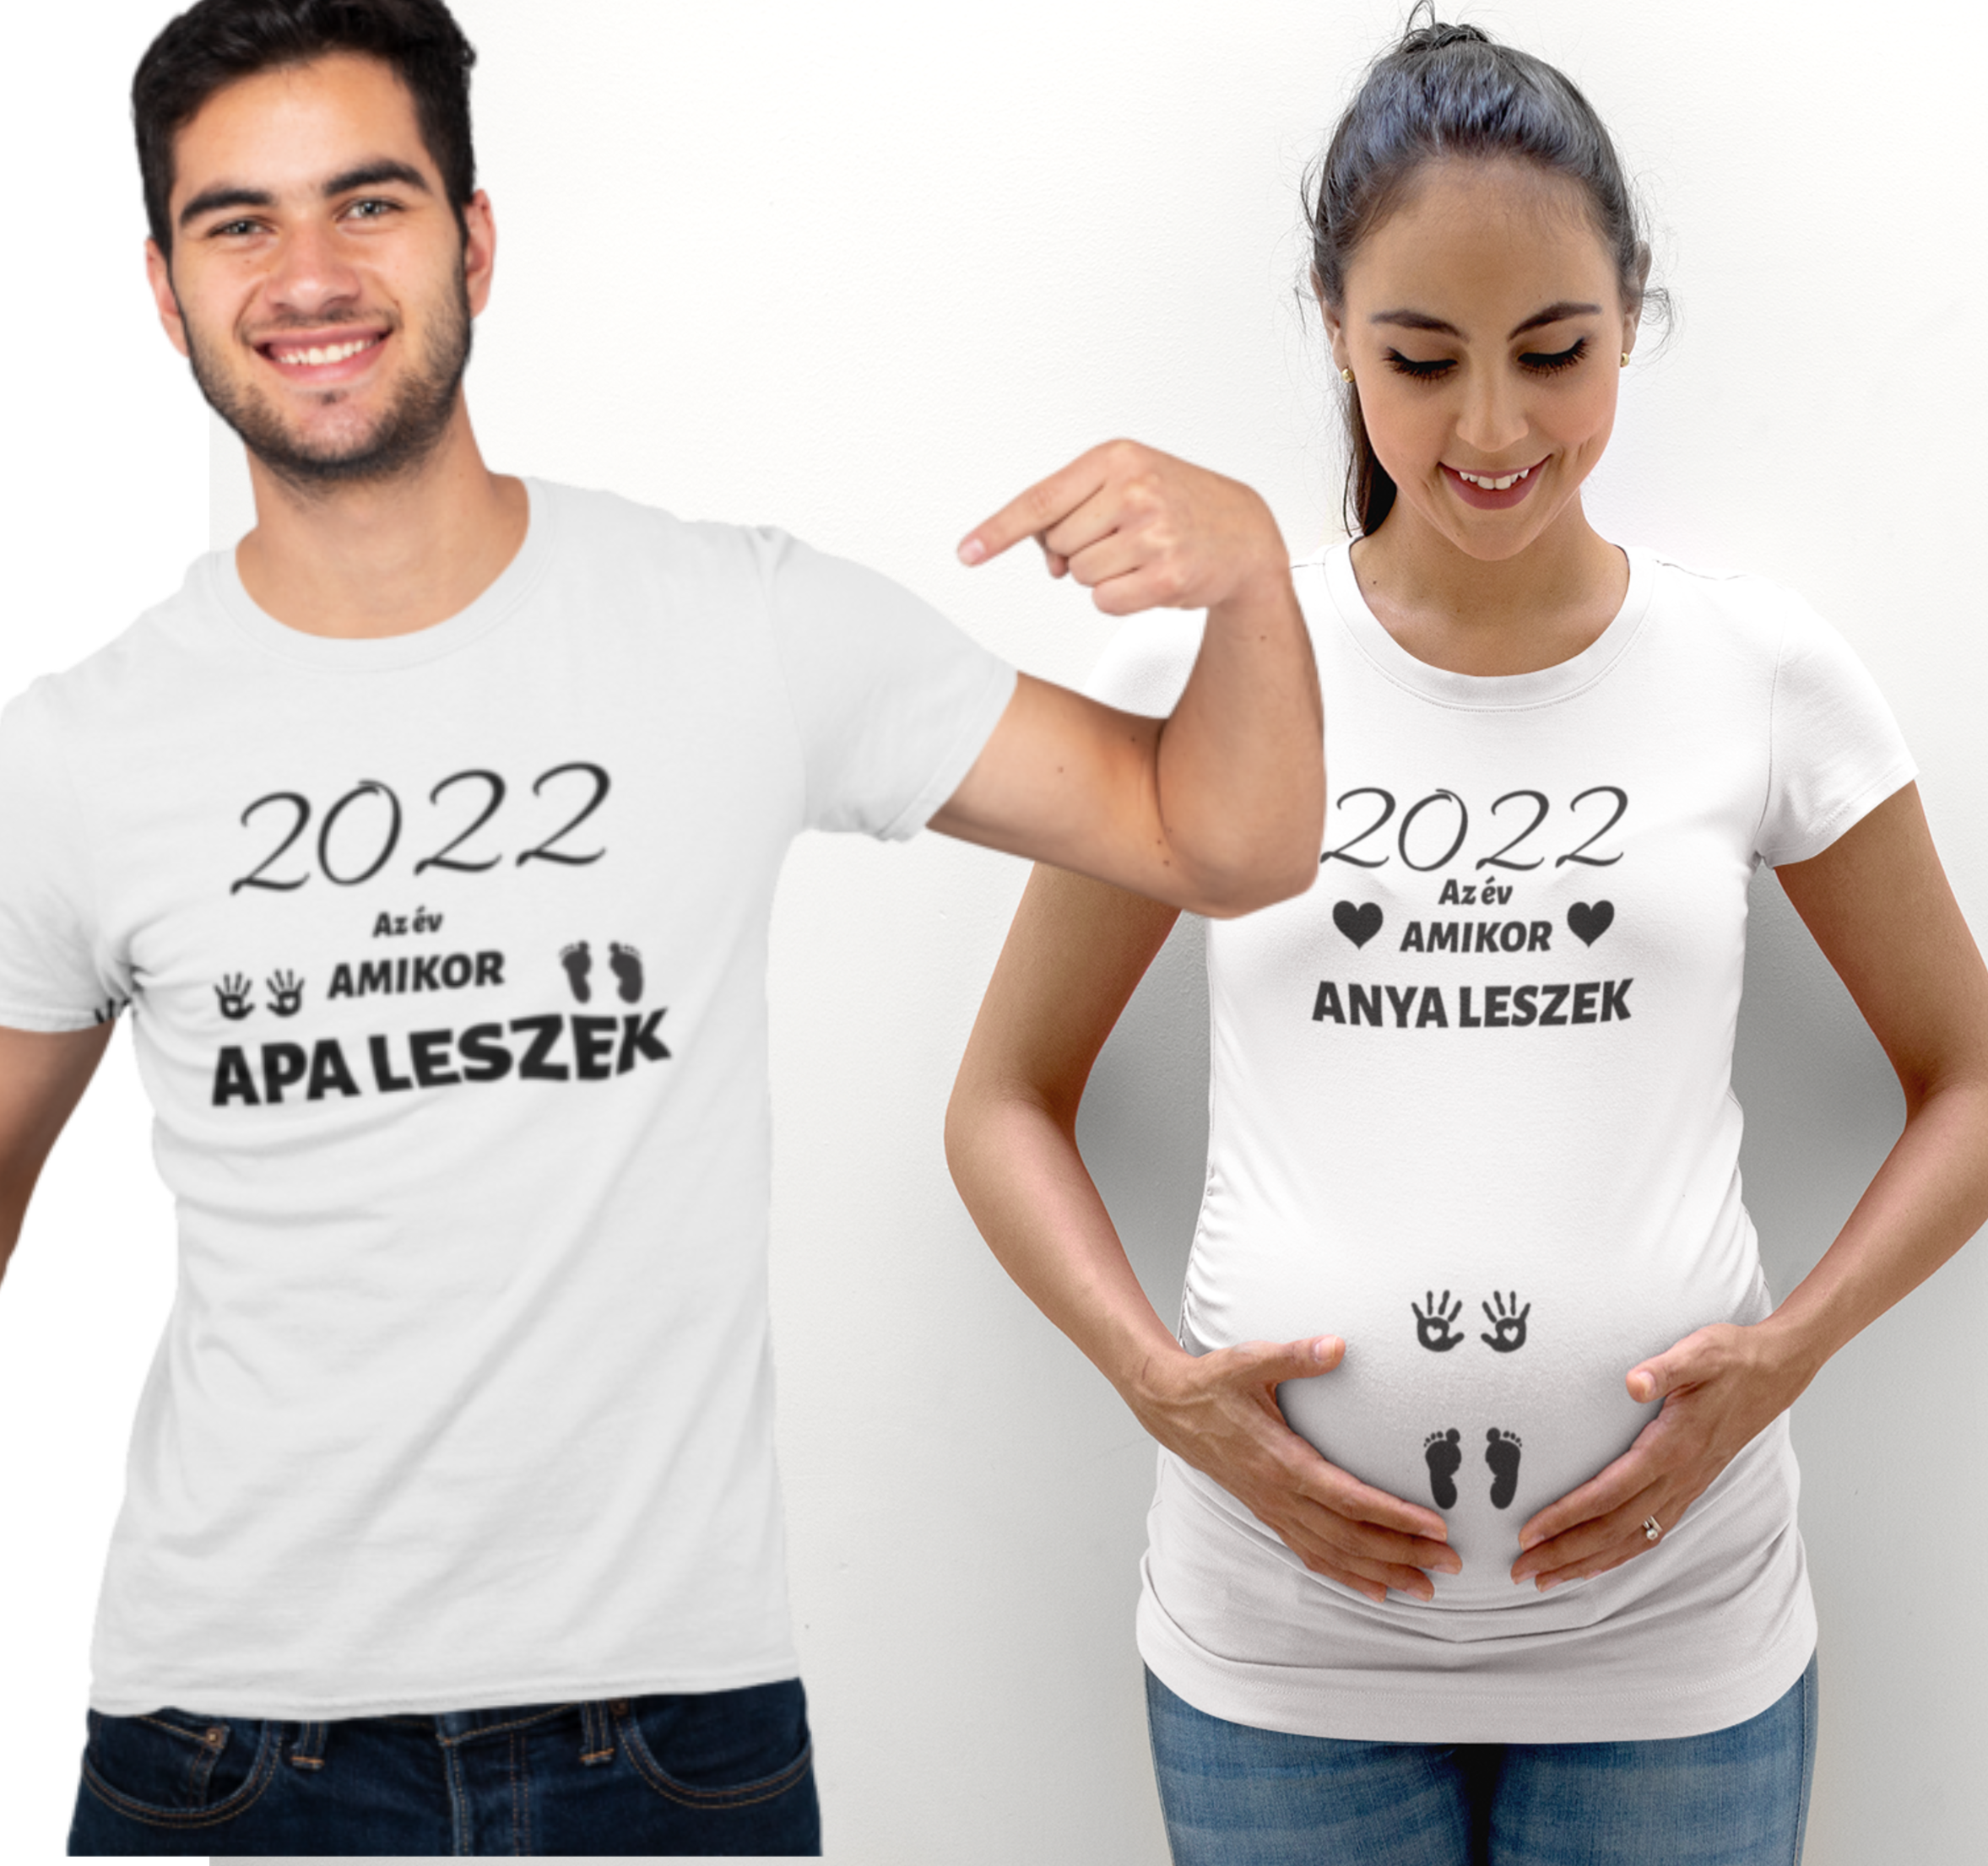 2022 az év amikor anya leszek/ 2022 az év amikor apa leszek*  (2 db póló)